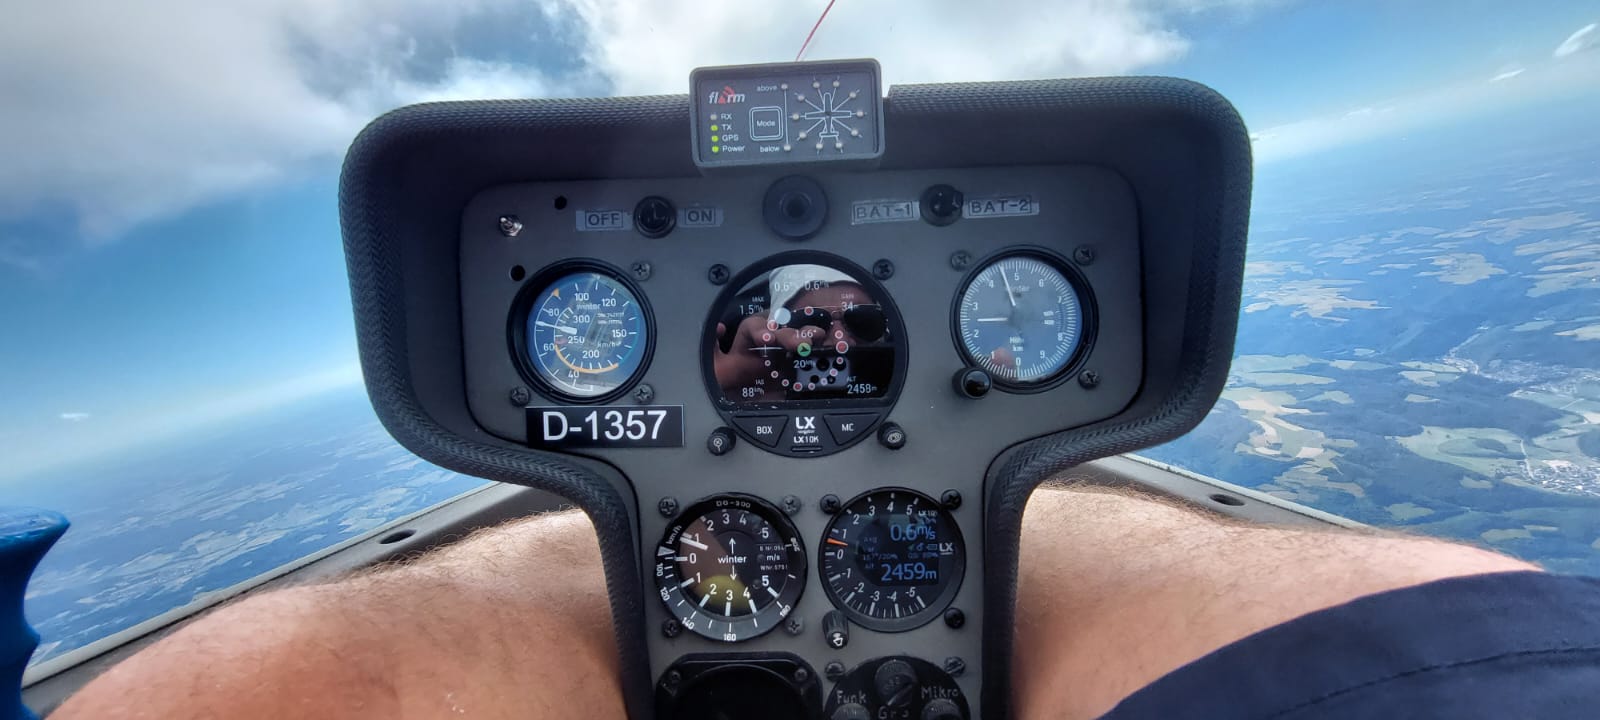 Foto aus dem Cockpit eines Segelflugzeugs im Flug. Insbesondere ist das Instrumentenbrett zu erkennen.